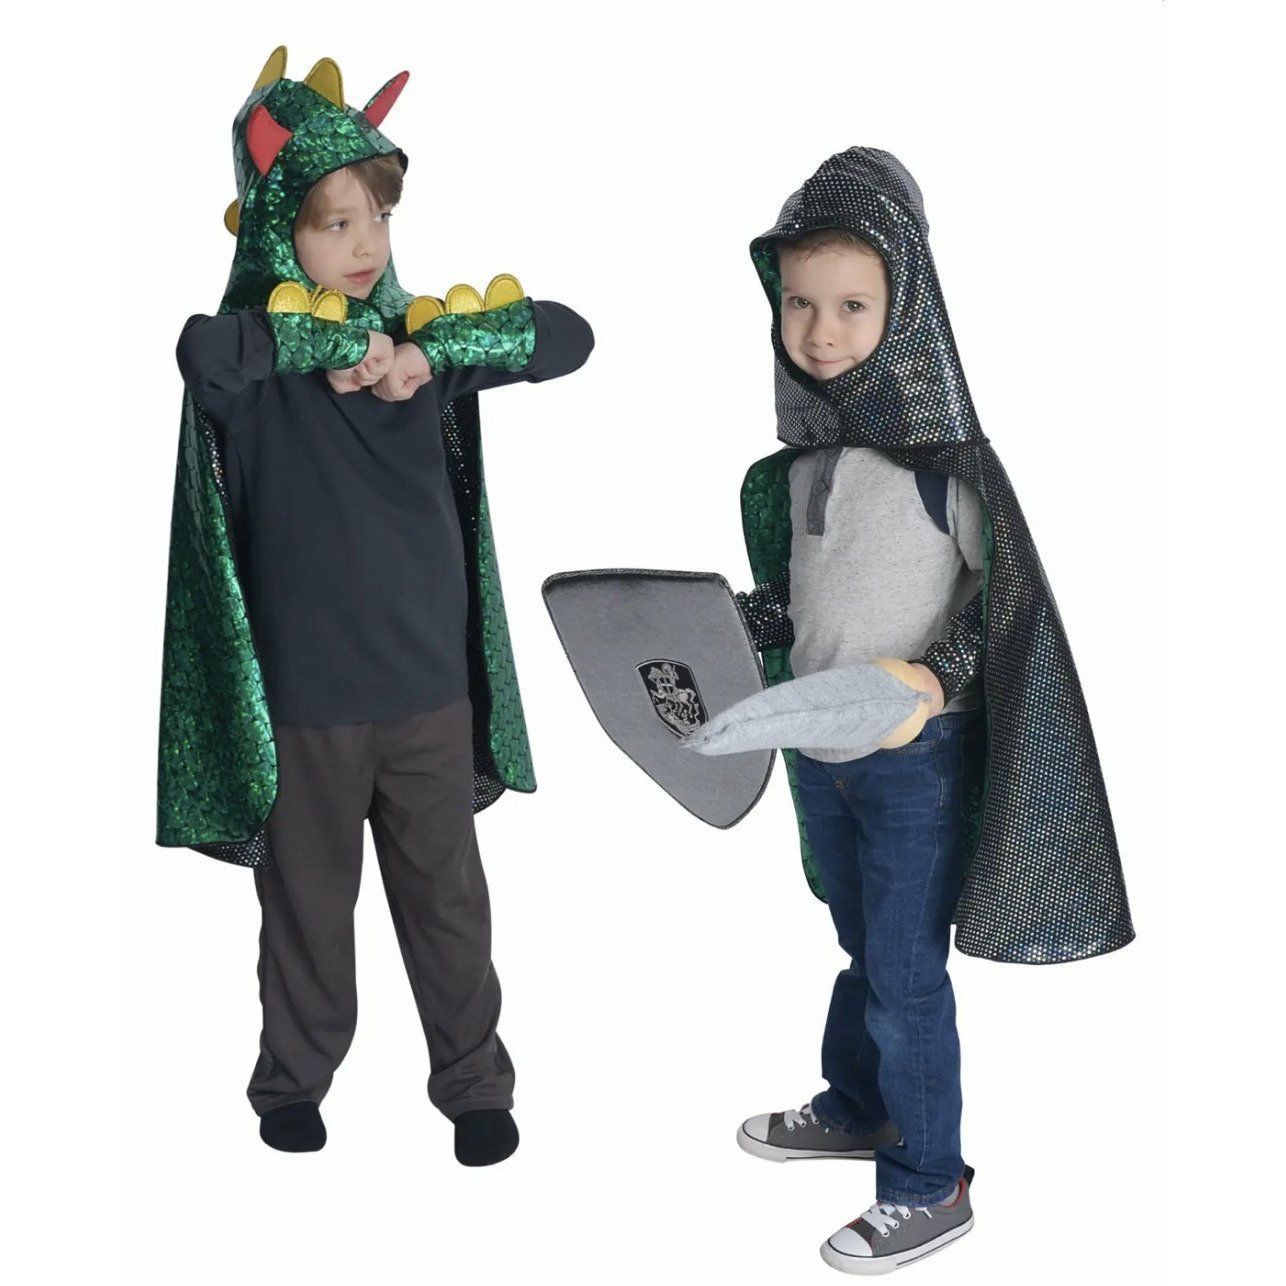 Soft Shield for Costume or Pretend Play - Alder & Alouette